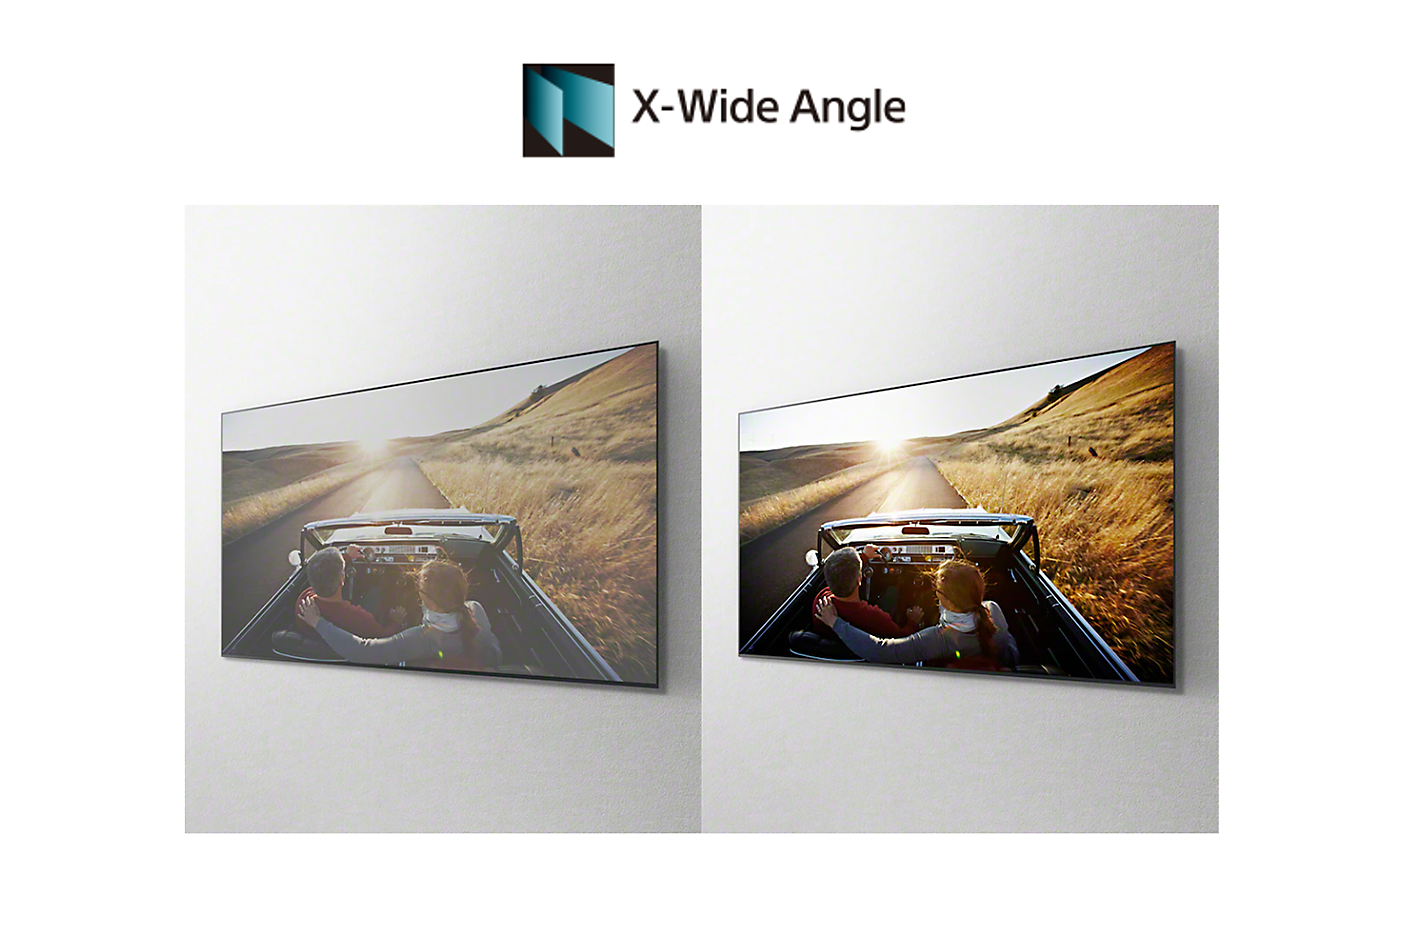 Snímek automobilu na dvou obrazovkách znázorňující věrné barvy ze všech stran dosažené pomocí technologie X-Wide Angle™